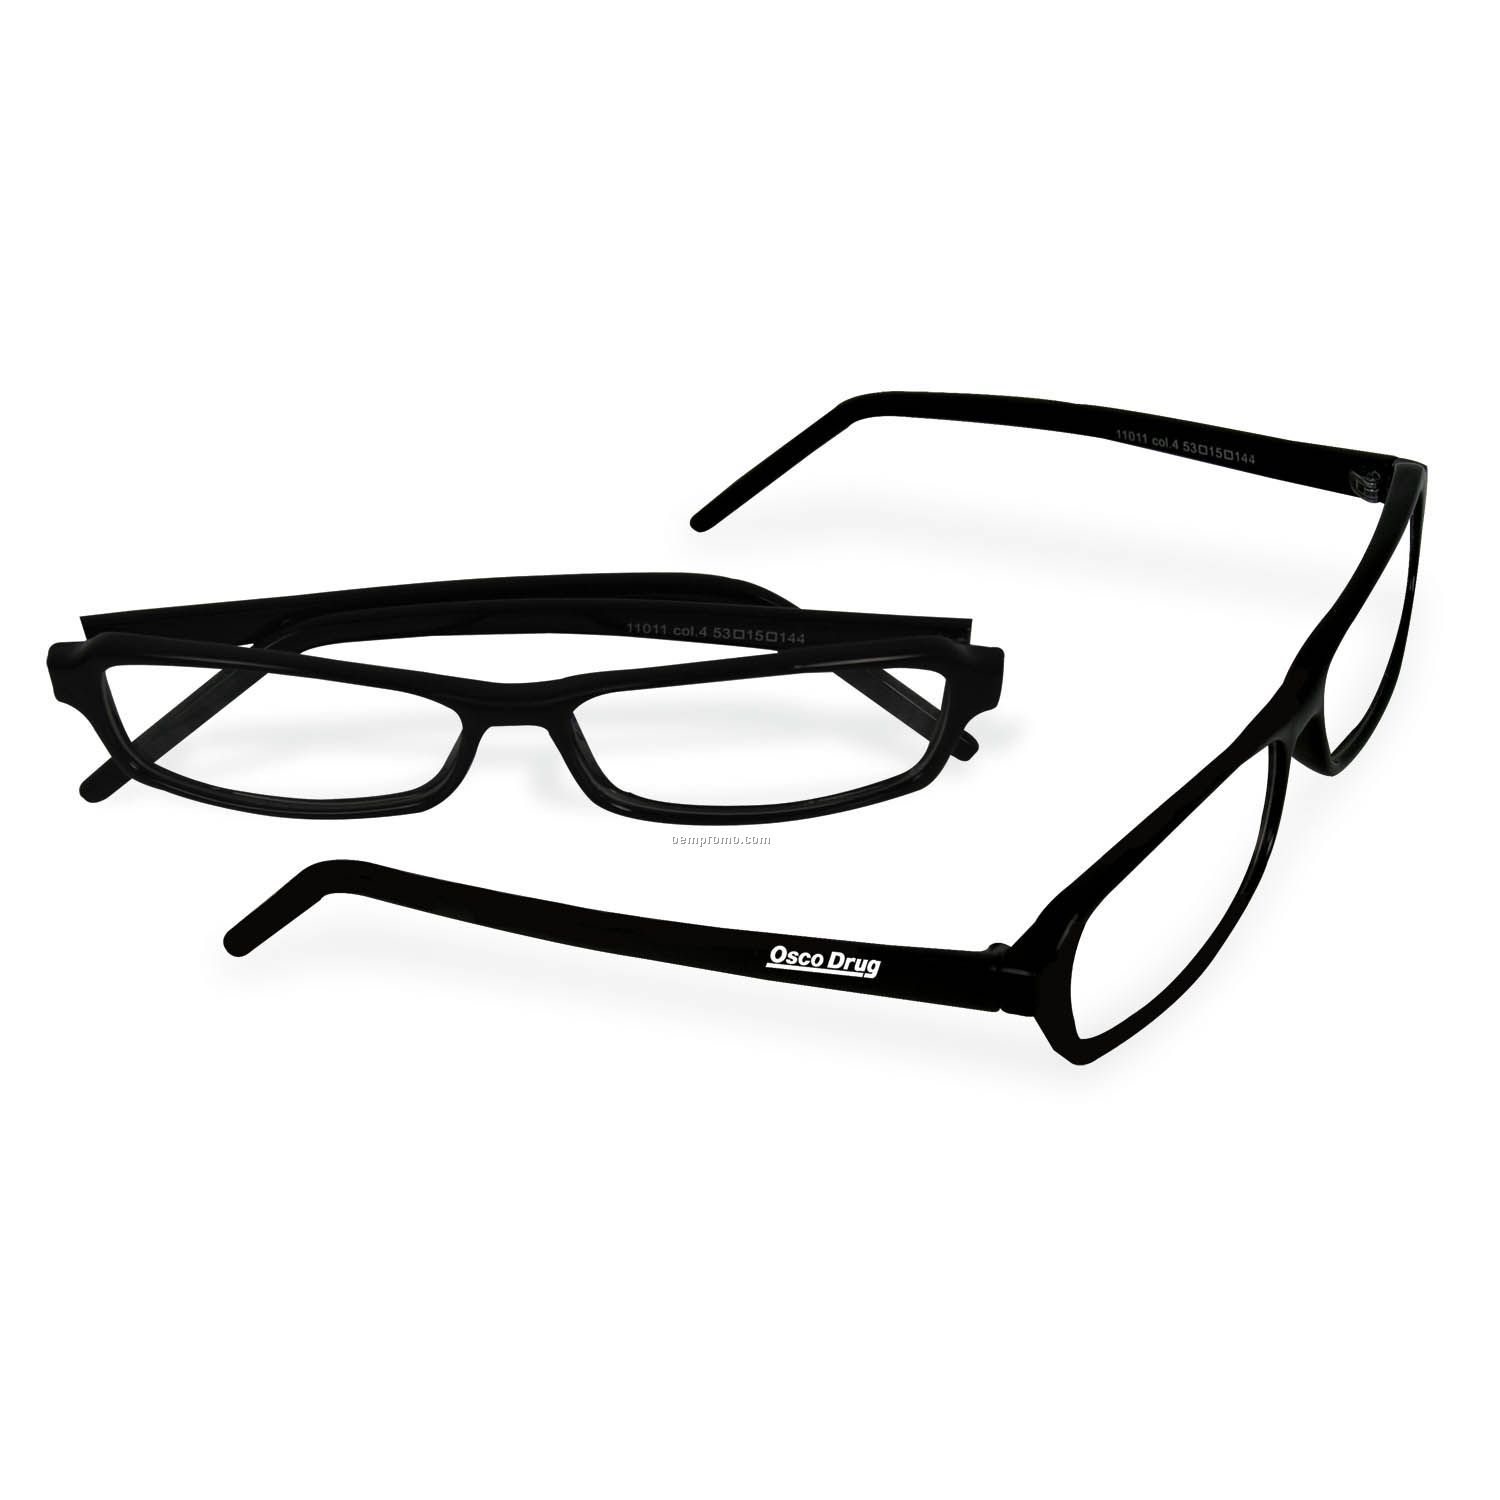 Pro-reader 1.75 Reading Glasses